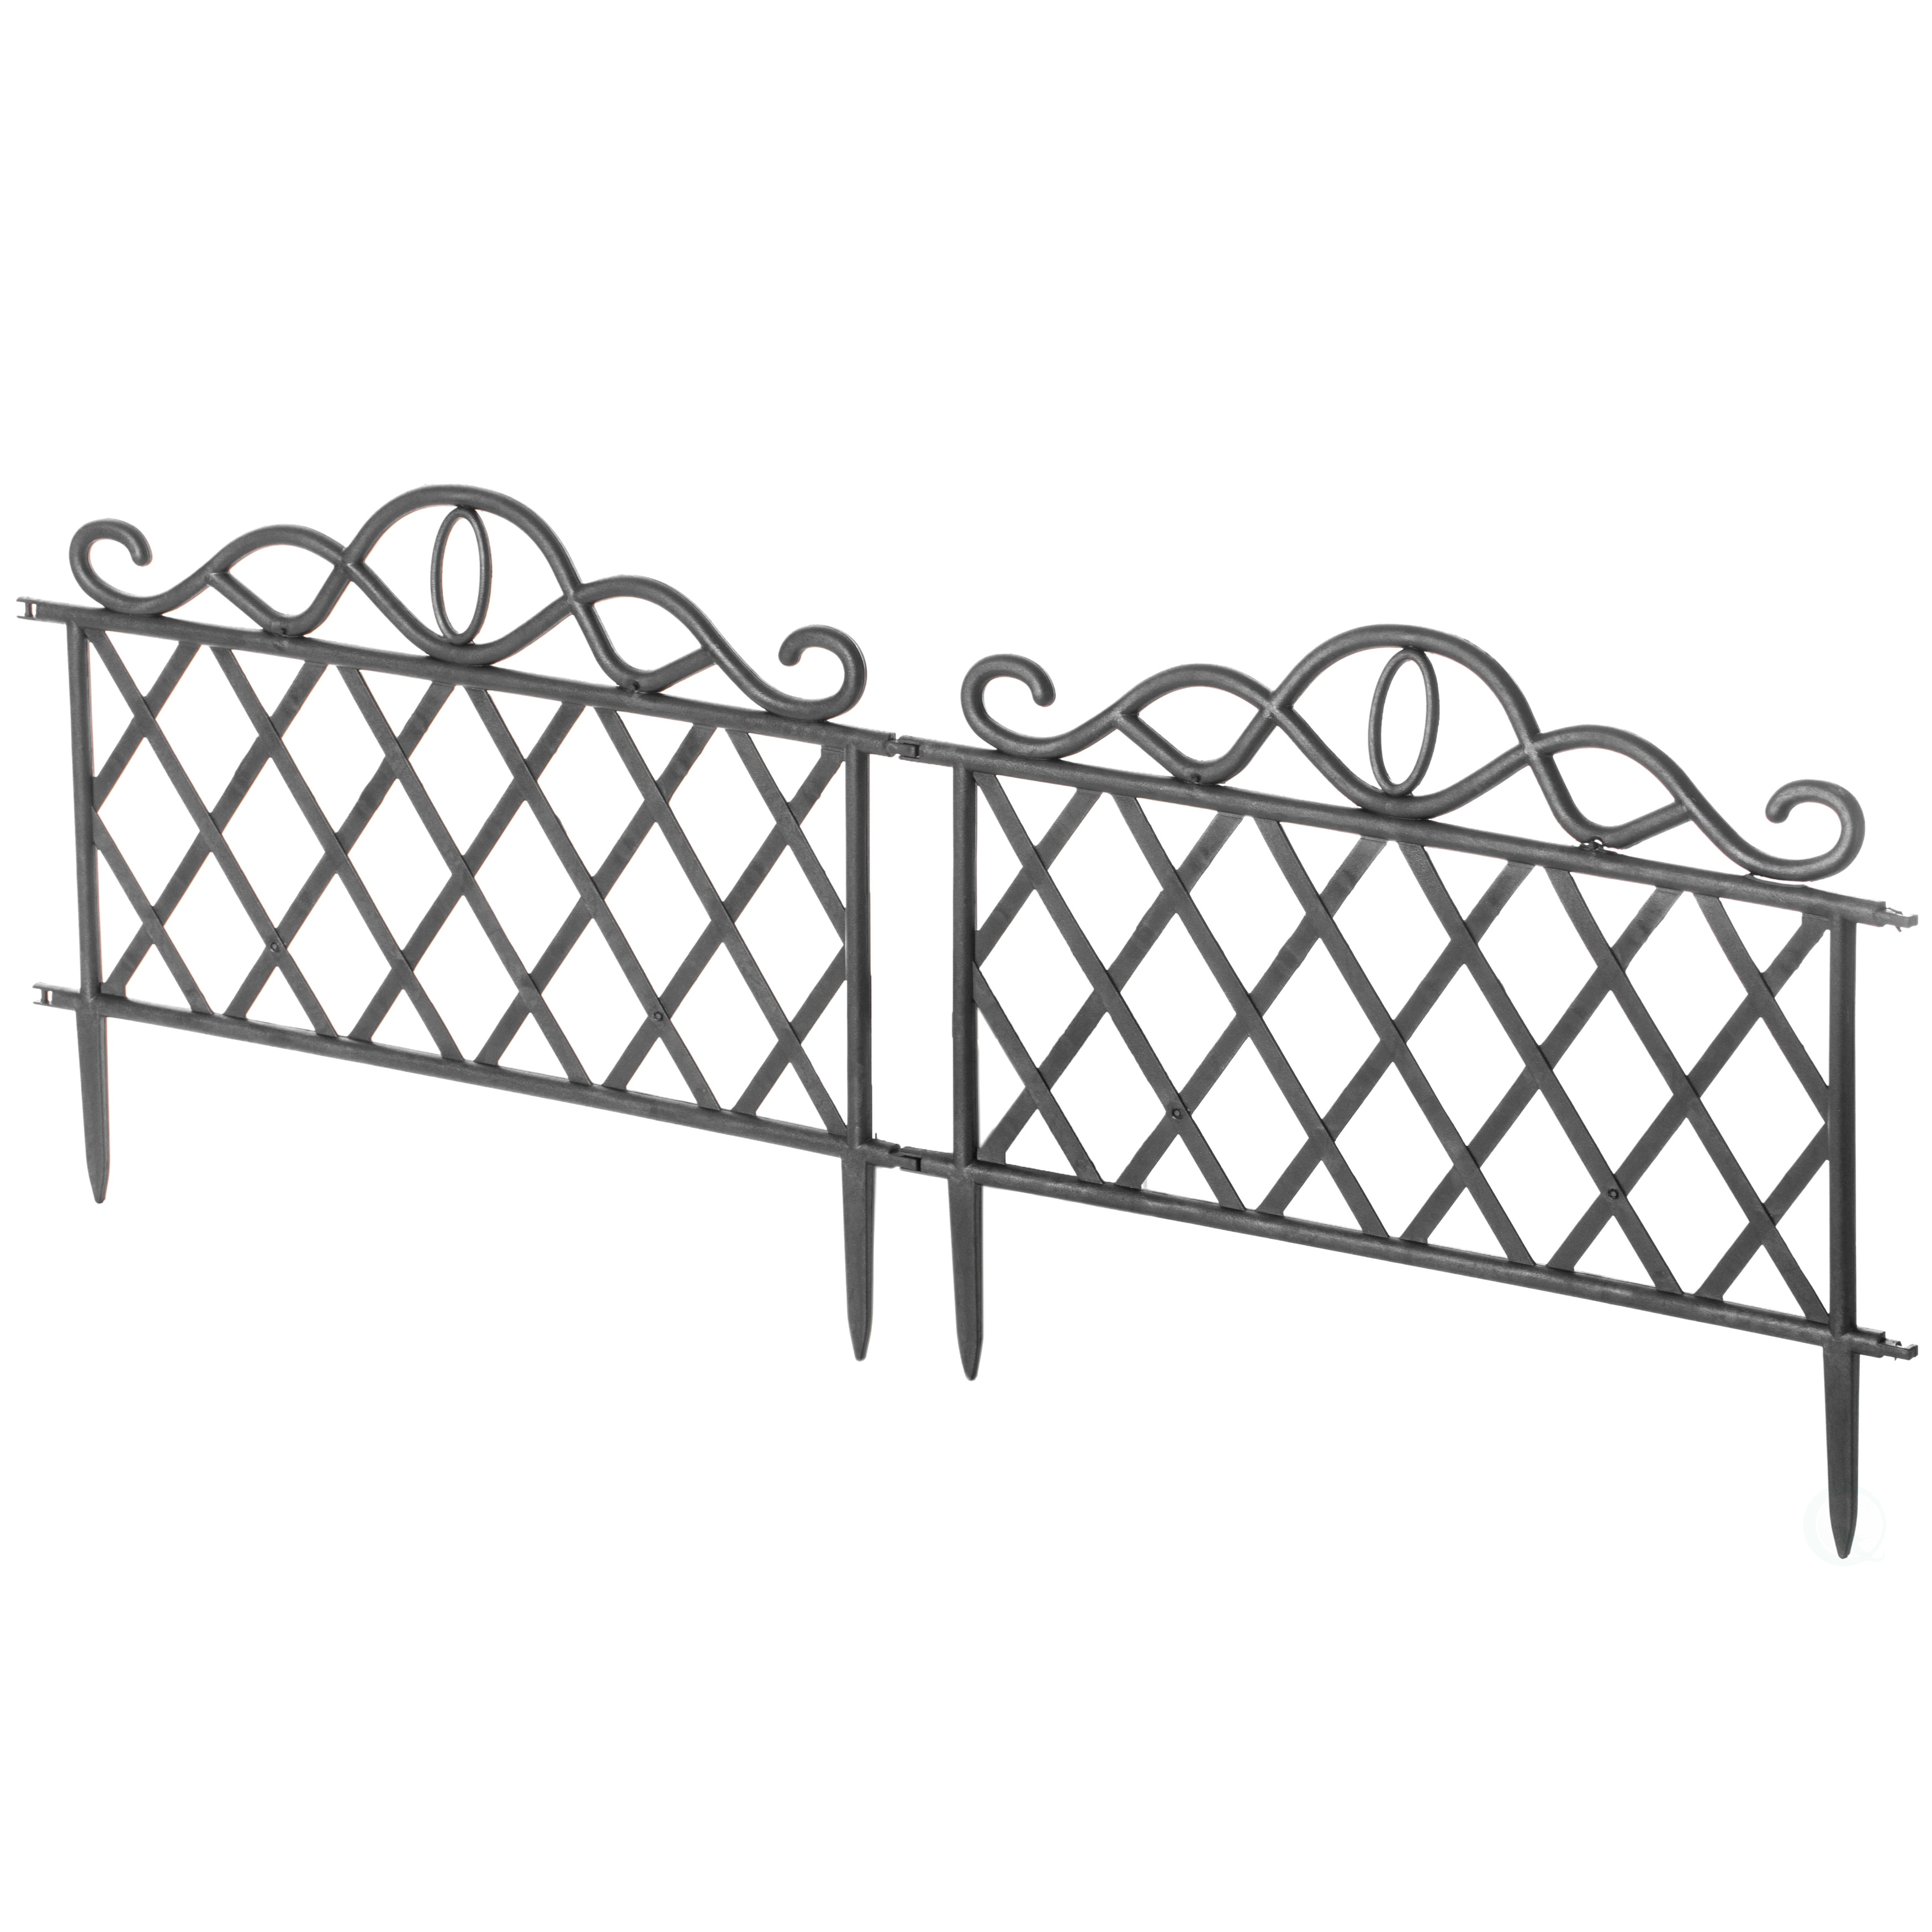 Plastic Garden Edging Border Fence, Flower Bed Barrier, Set of 3